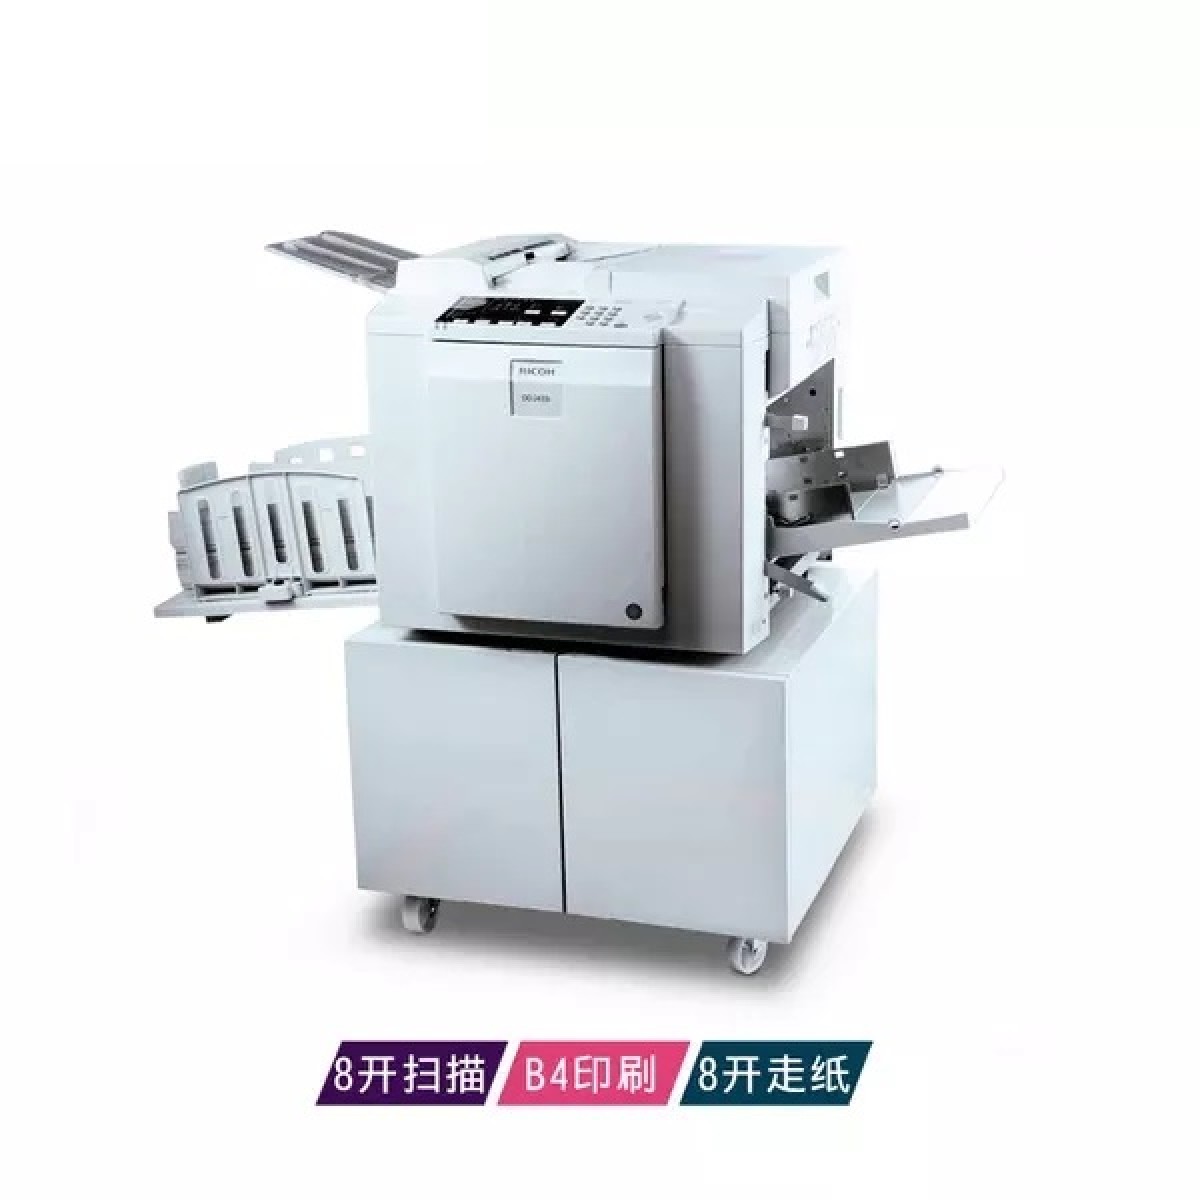 理光DD2433C数码速印机学校油印机试卷印刷机一体化速印机90/分钟